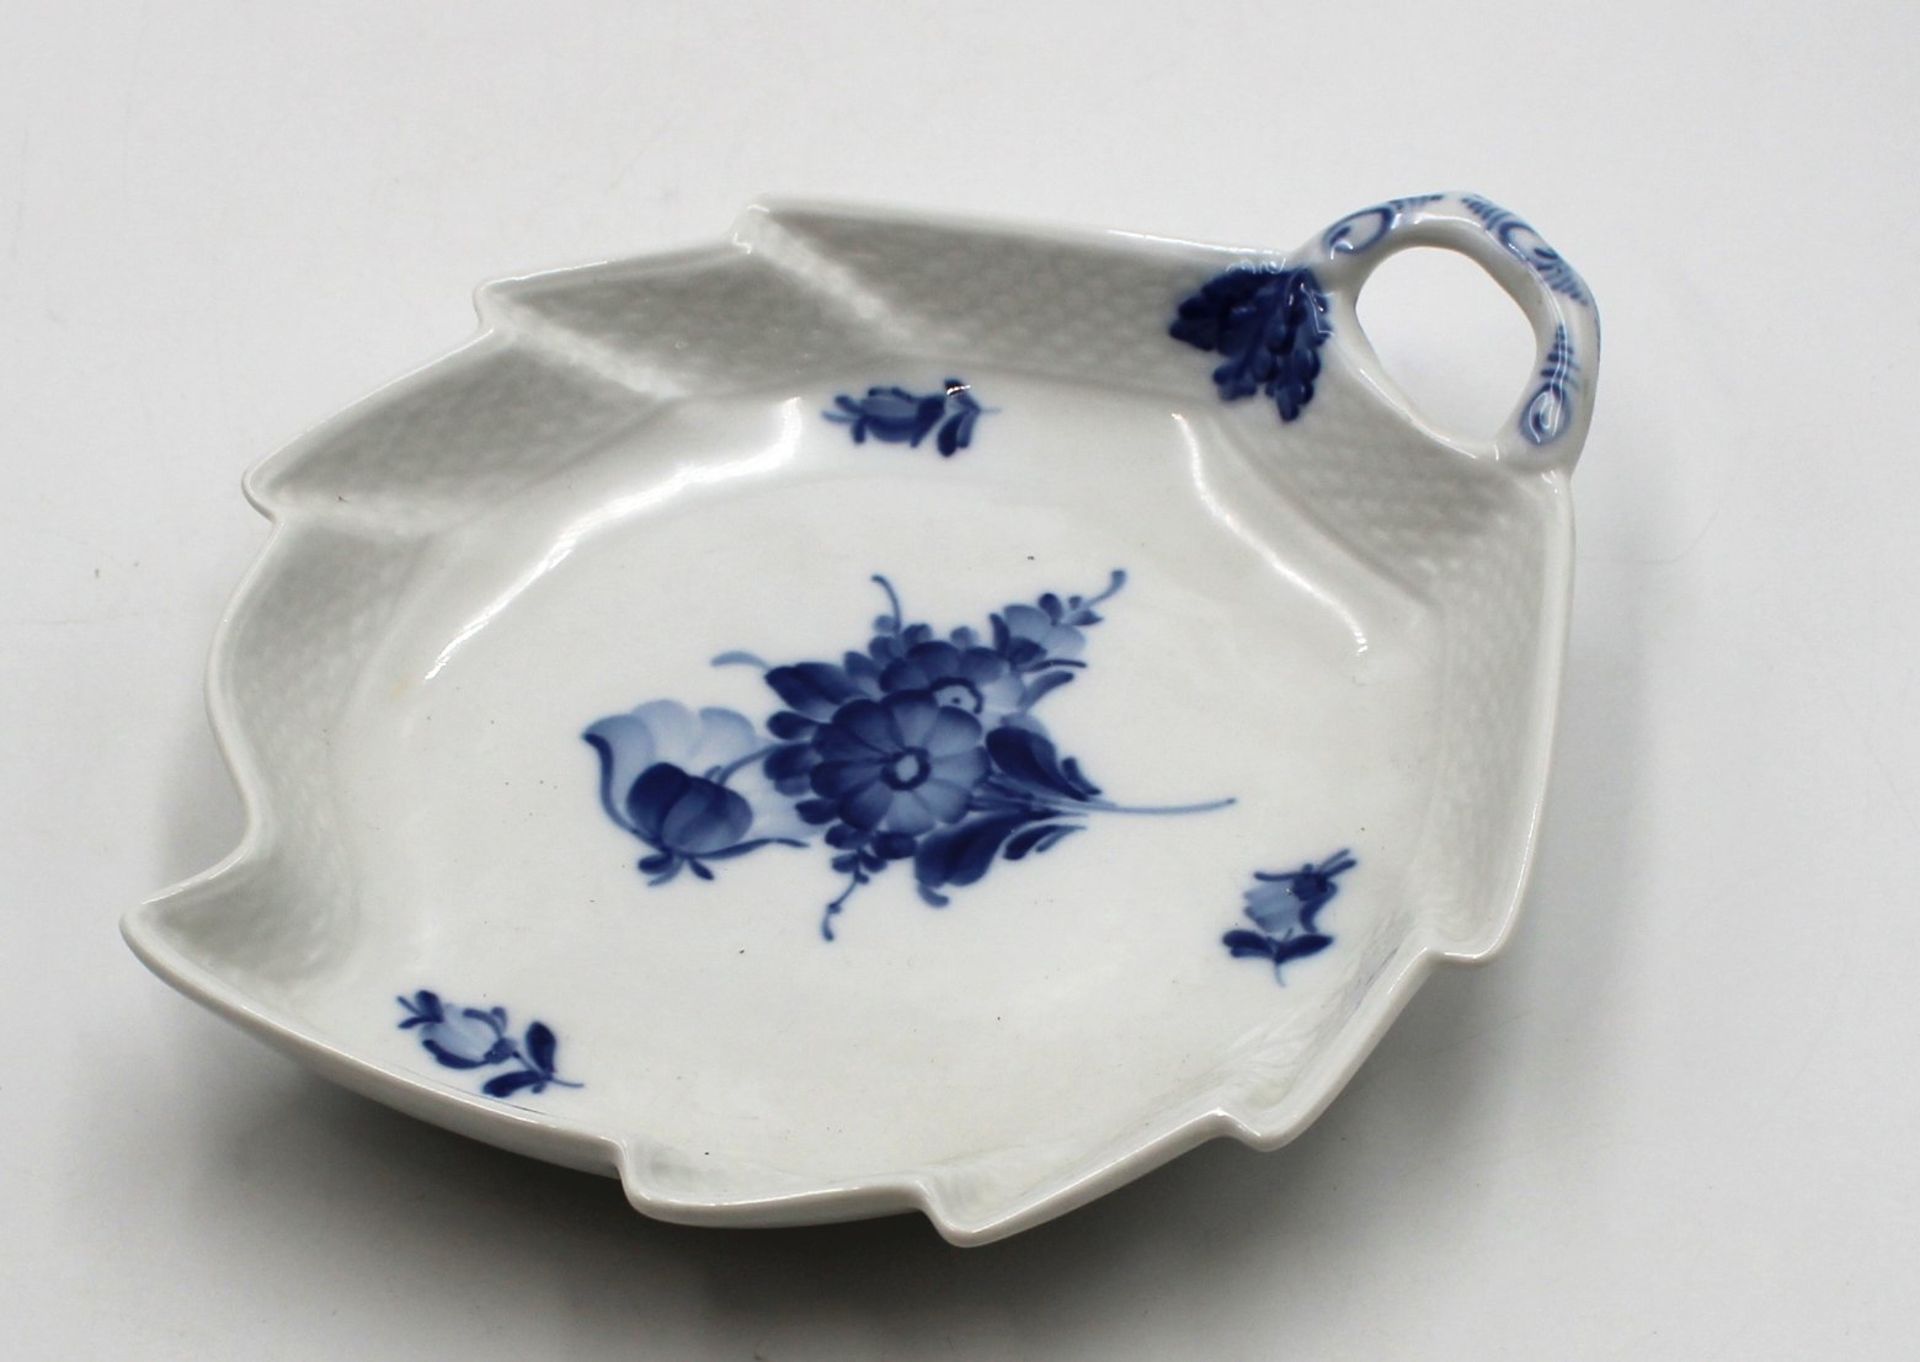 Blattschale, Royal Copenhagen, blaue Blume. H-4,8cm, 23,3  x 18,3cm.